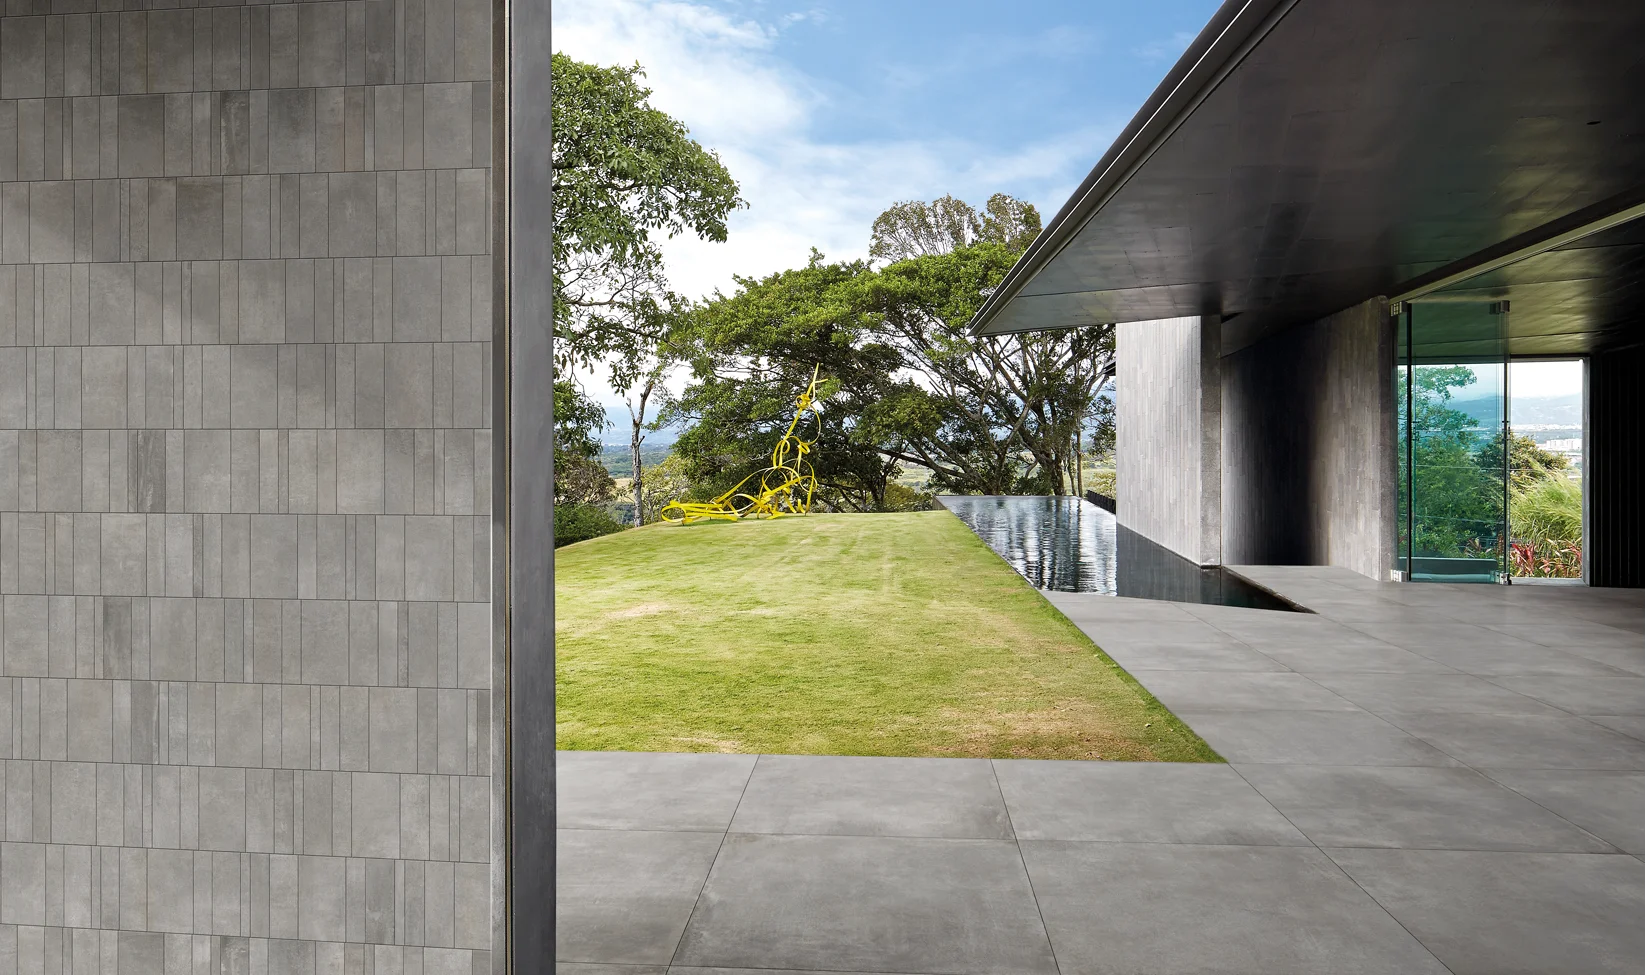 Un pavimento esterno in gres porcellanato effetto cemento Noord Grey, spessore 20 mm, con vista su un giardino e piscina a sfioro.